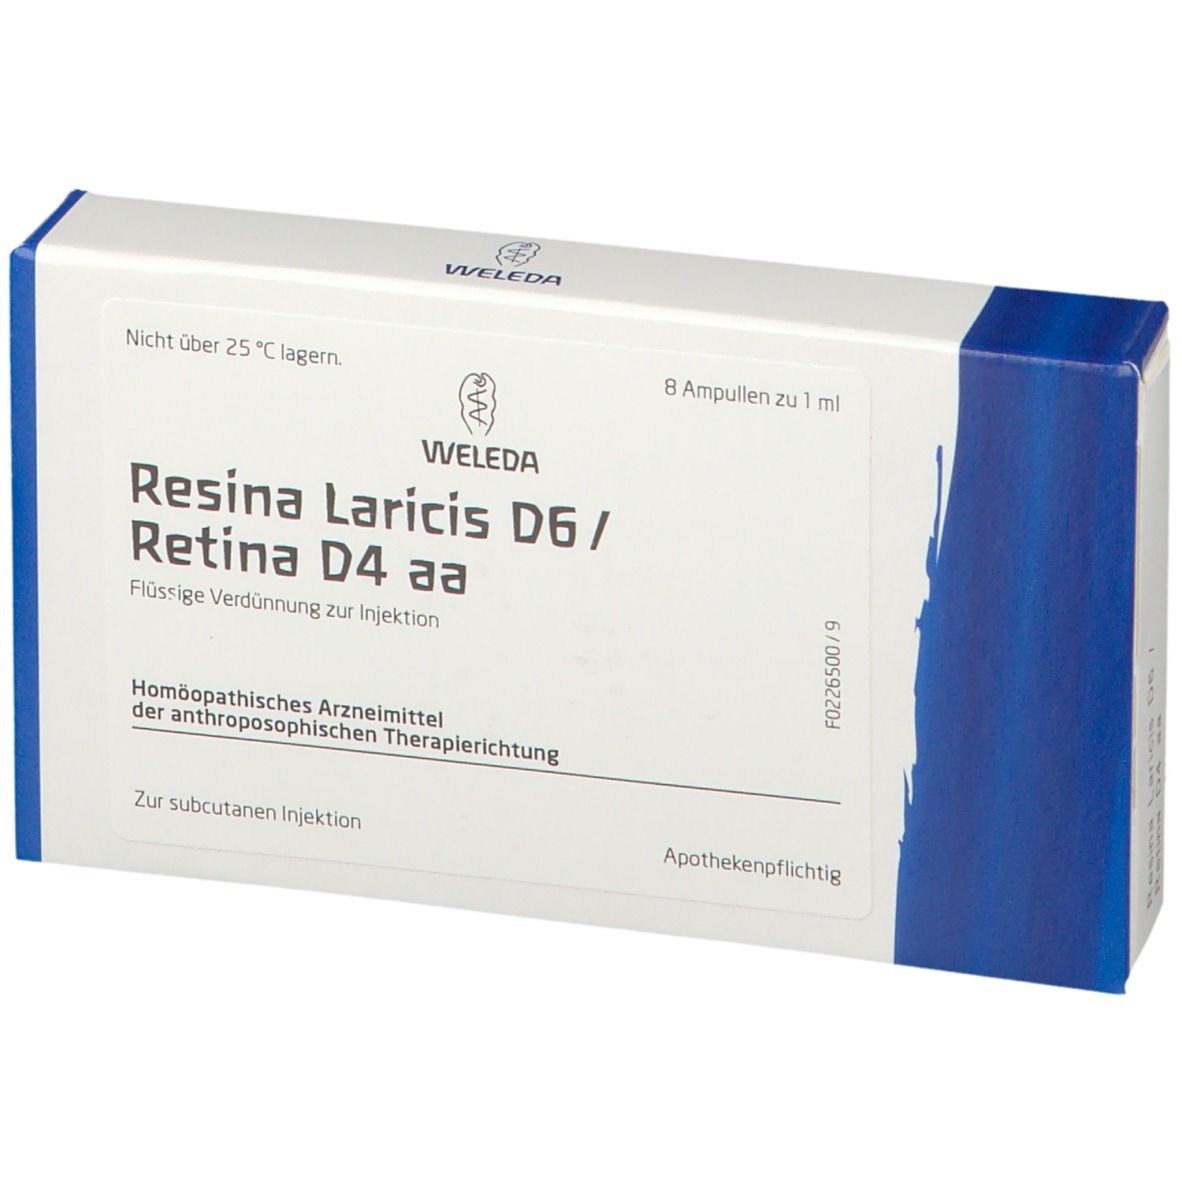 Resina Laricis D6 / Retina D4 aa